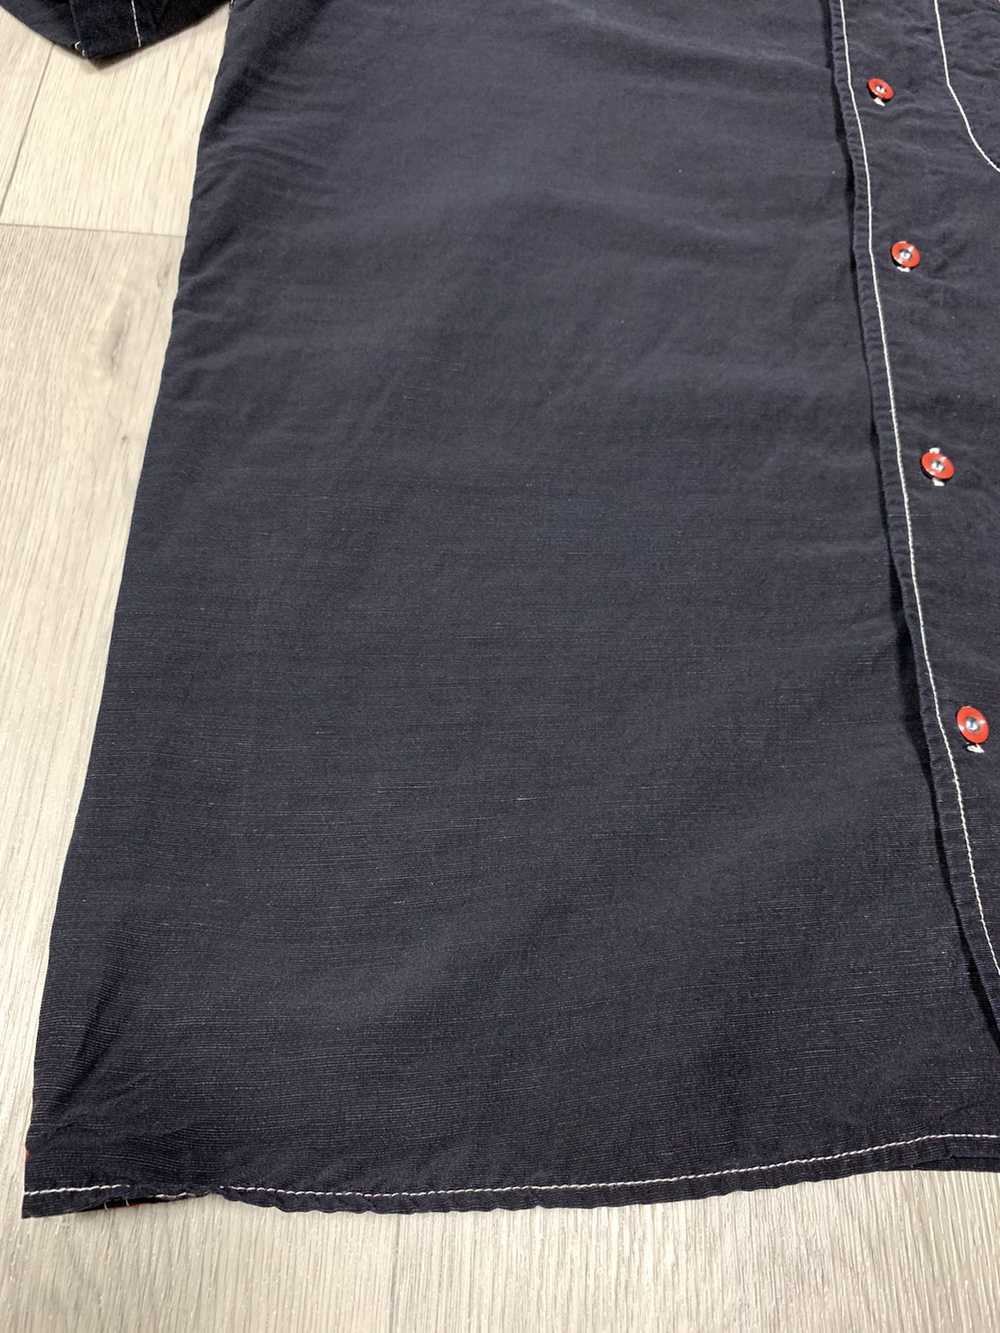 Armani × Italian Designers × Luxury Armani jeans … - image 4